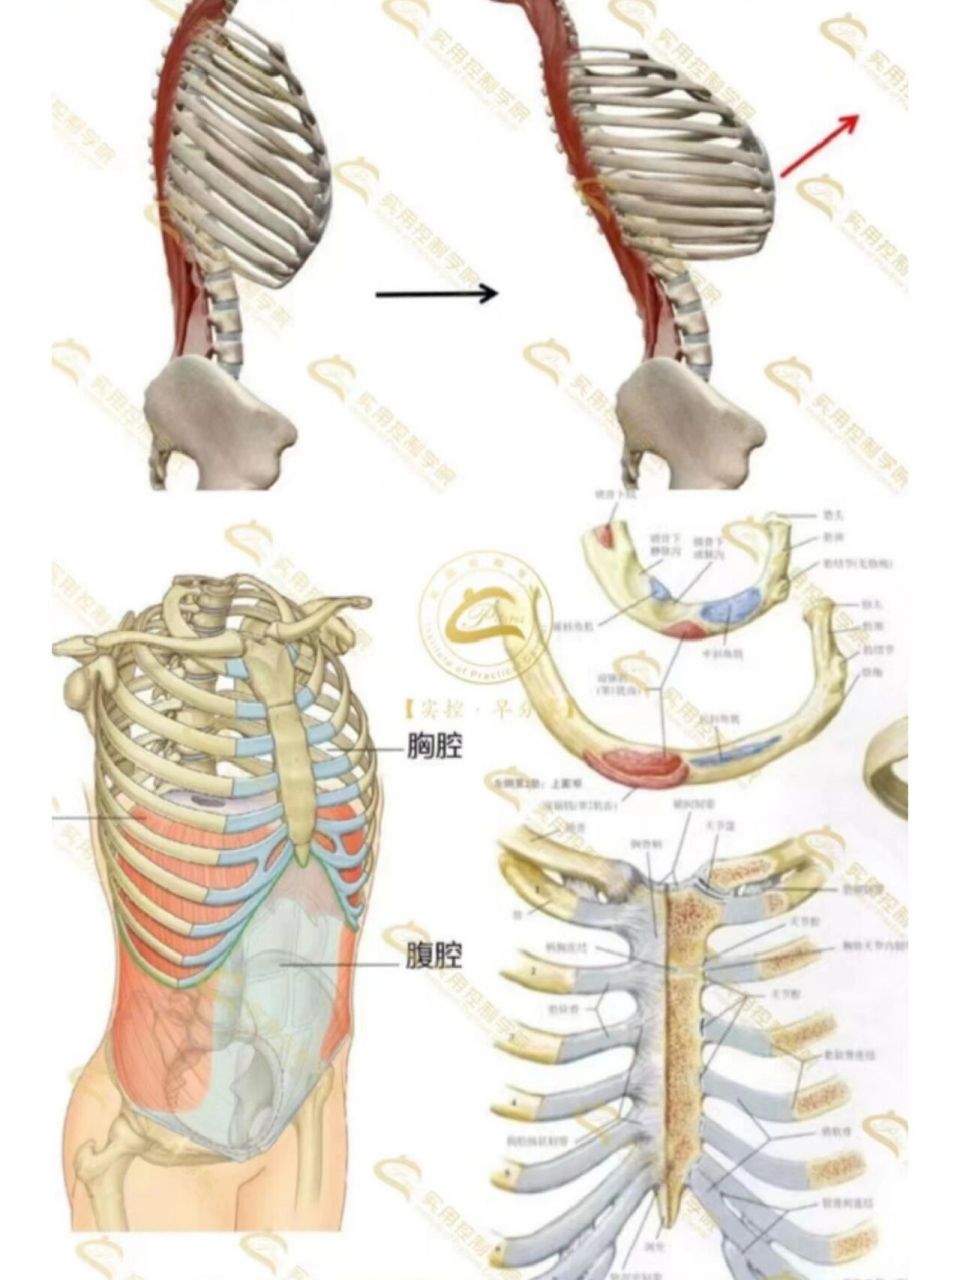 肋骨解剖图及名称图片